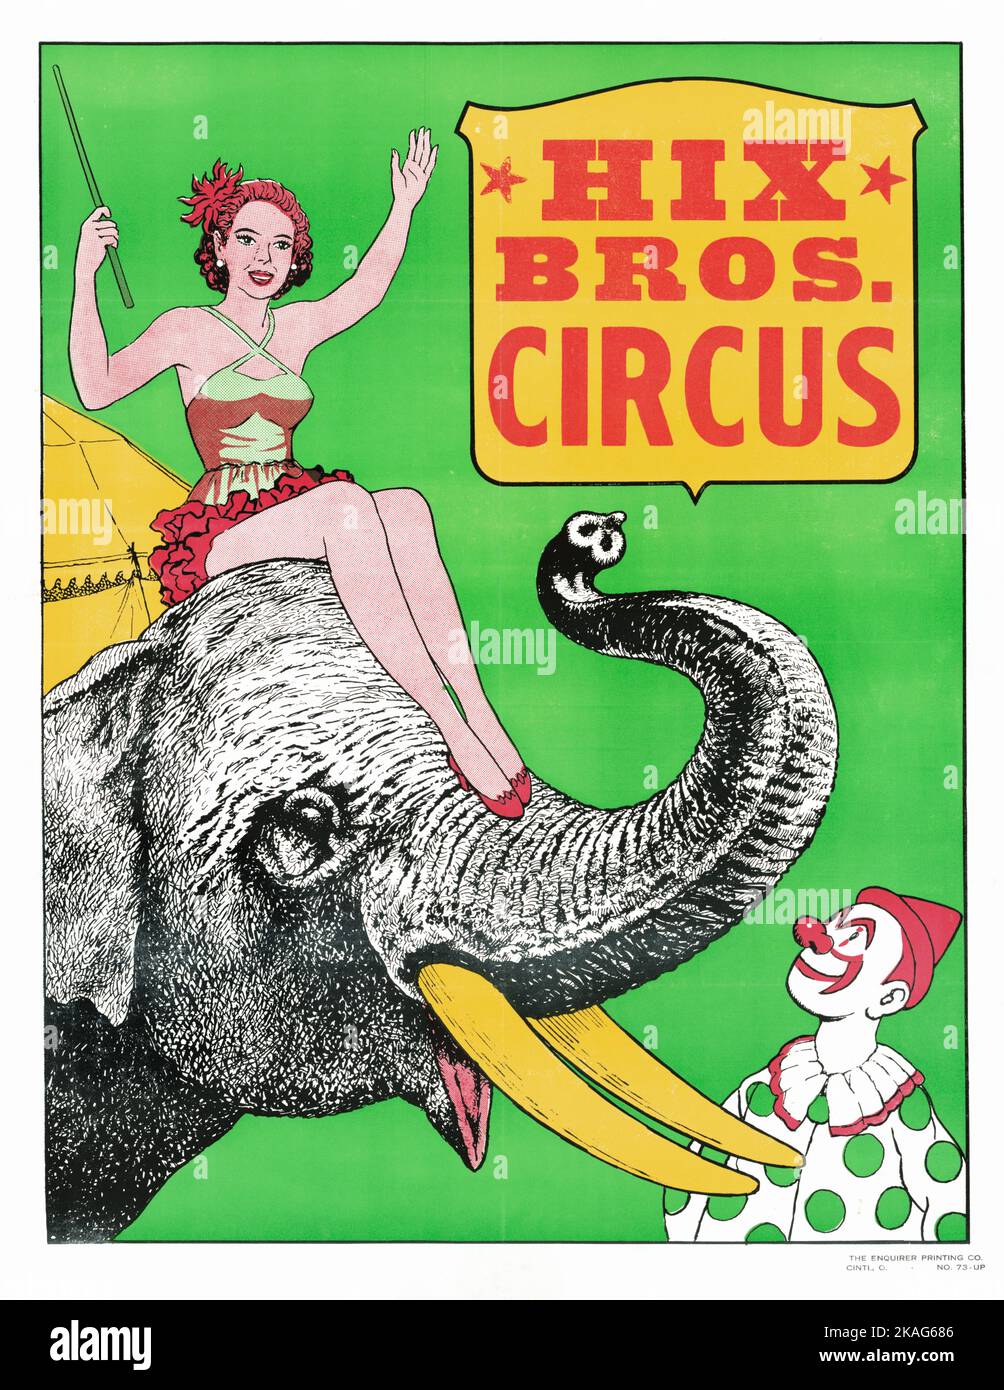 HIX Bros. Circus - Zirkusposter mit Frauen auf Elefanten reiten und einem Clown - 1970 Stockfoto